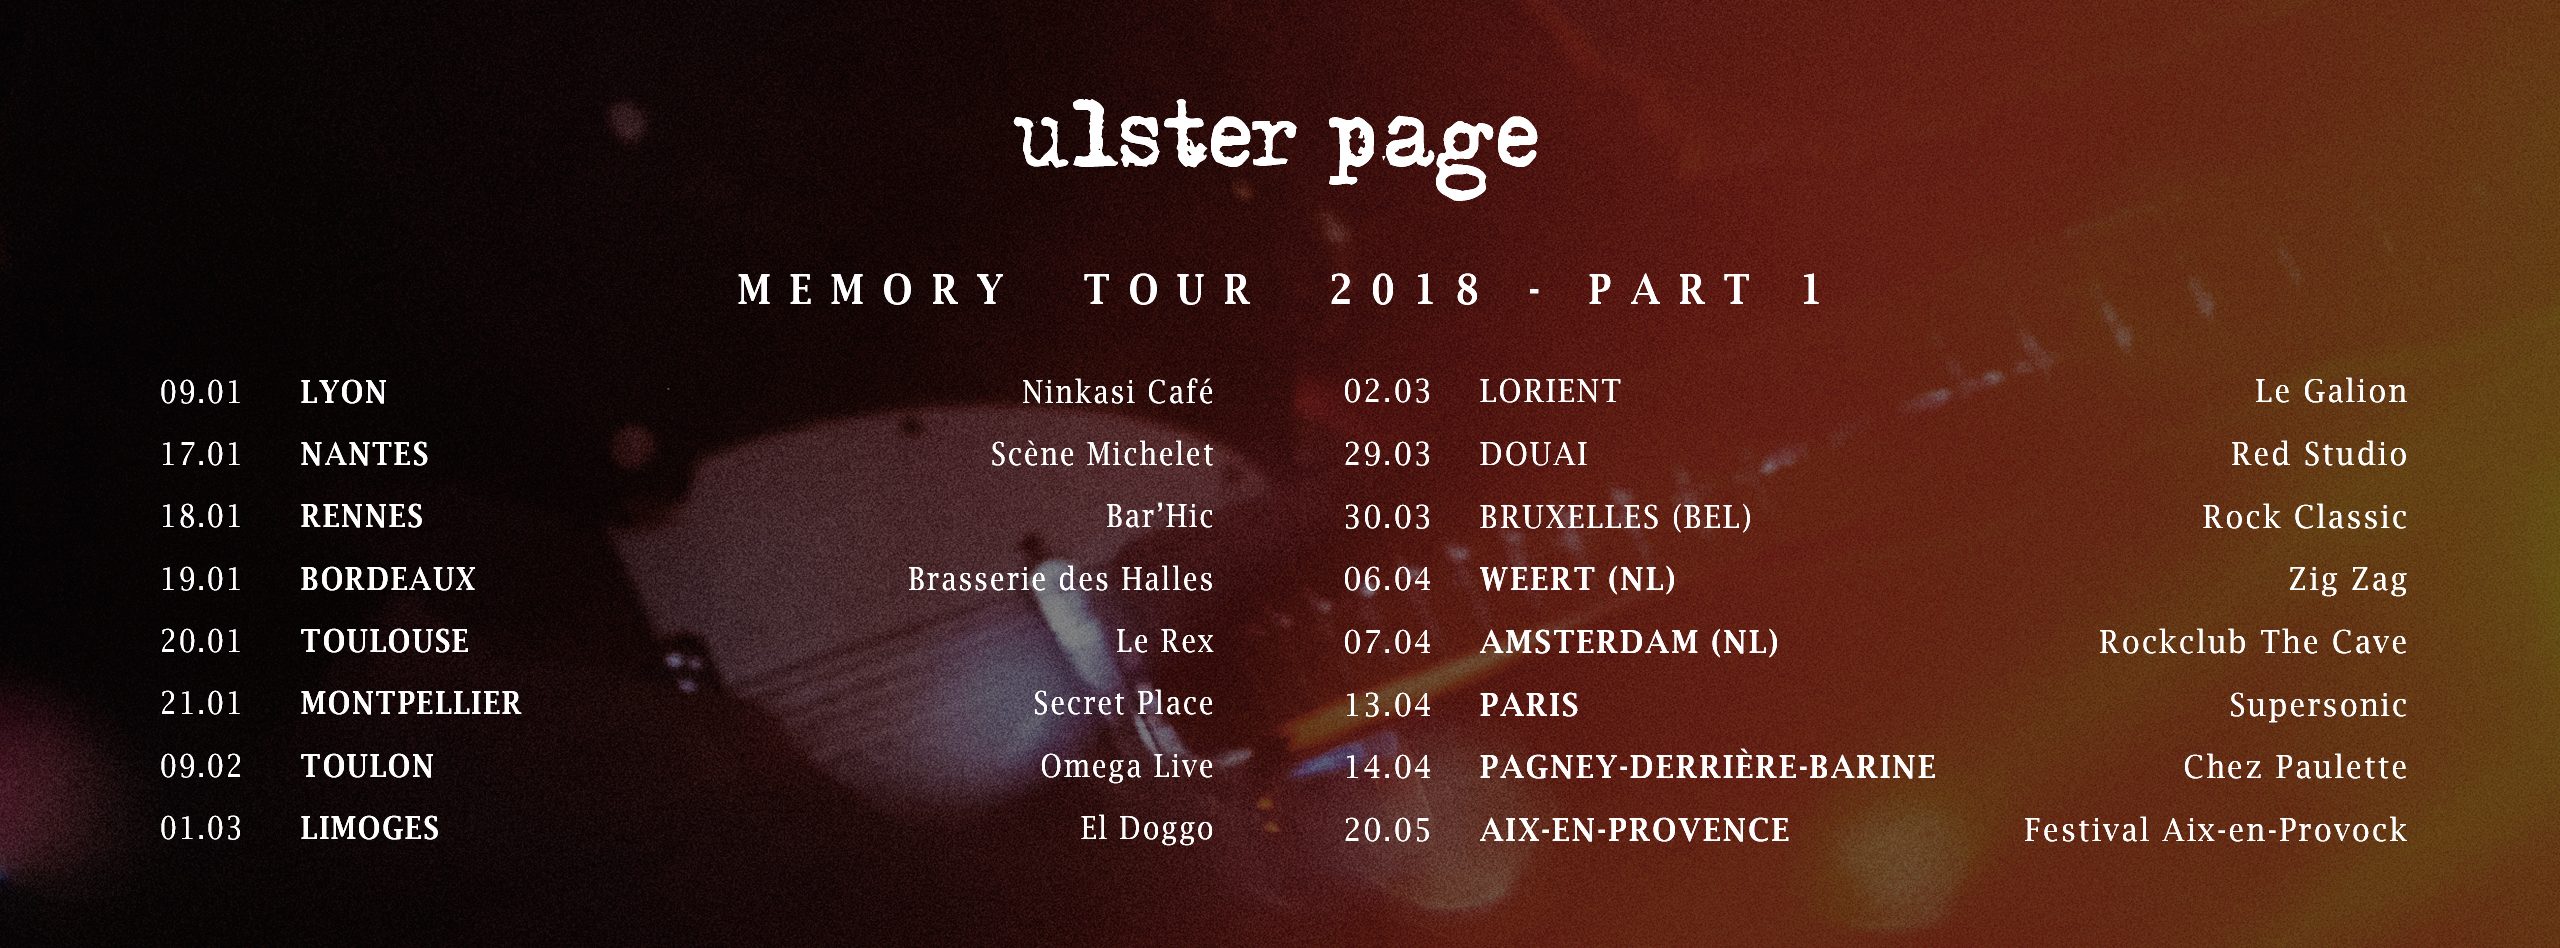 MEMORY TOUR 2018 PART 1